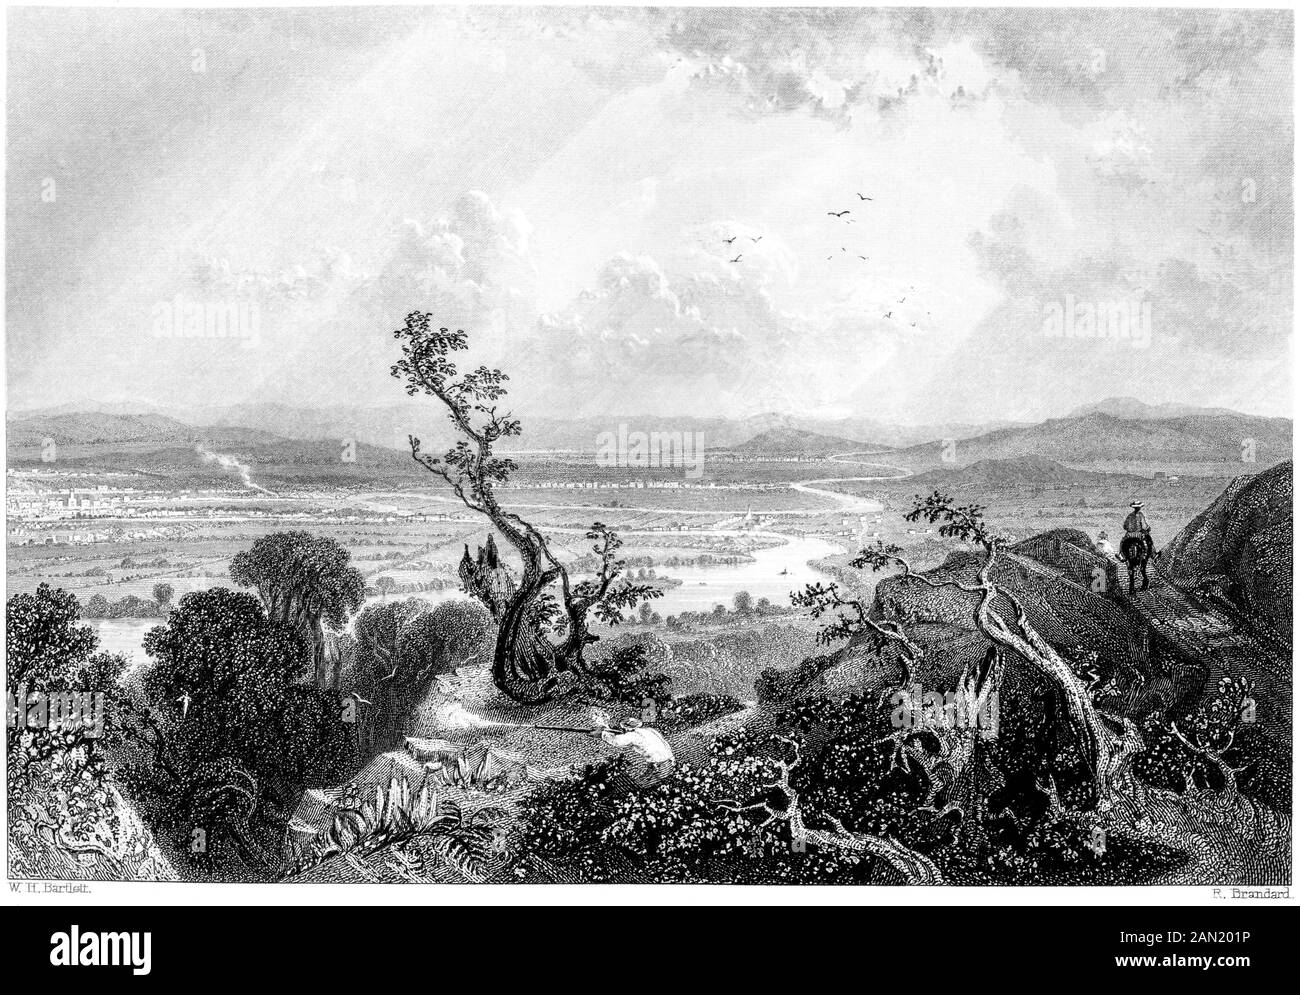 Eine Gravur der Tal des Connecticut (vom Mount Holyoke) bei hoher Auflösung gescannt. aus einem Buch im Jahre 1840 gedruckt. Glaubten copyright frei. Stockfoto